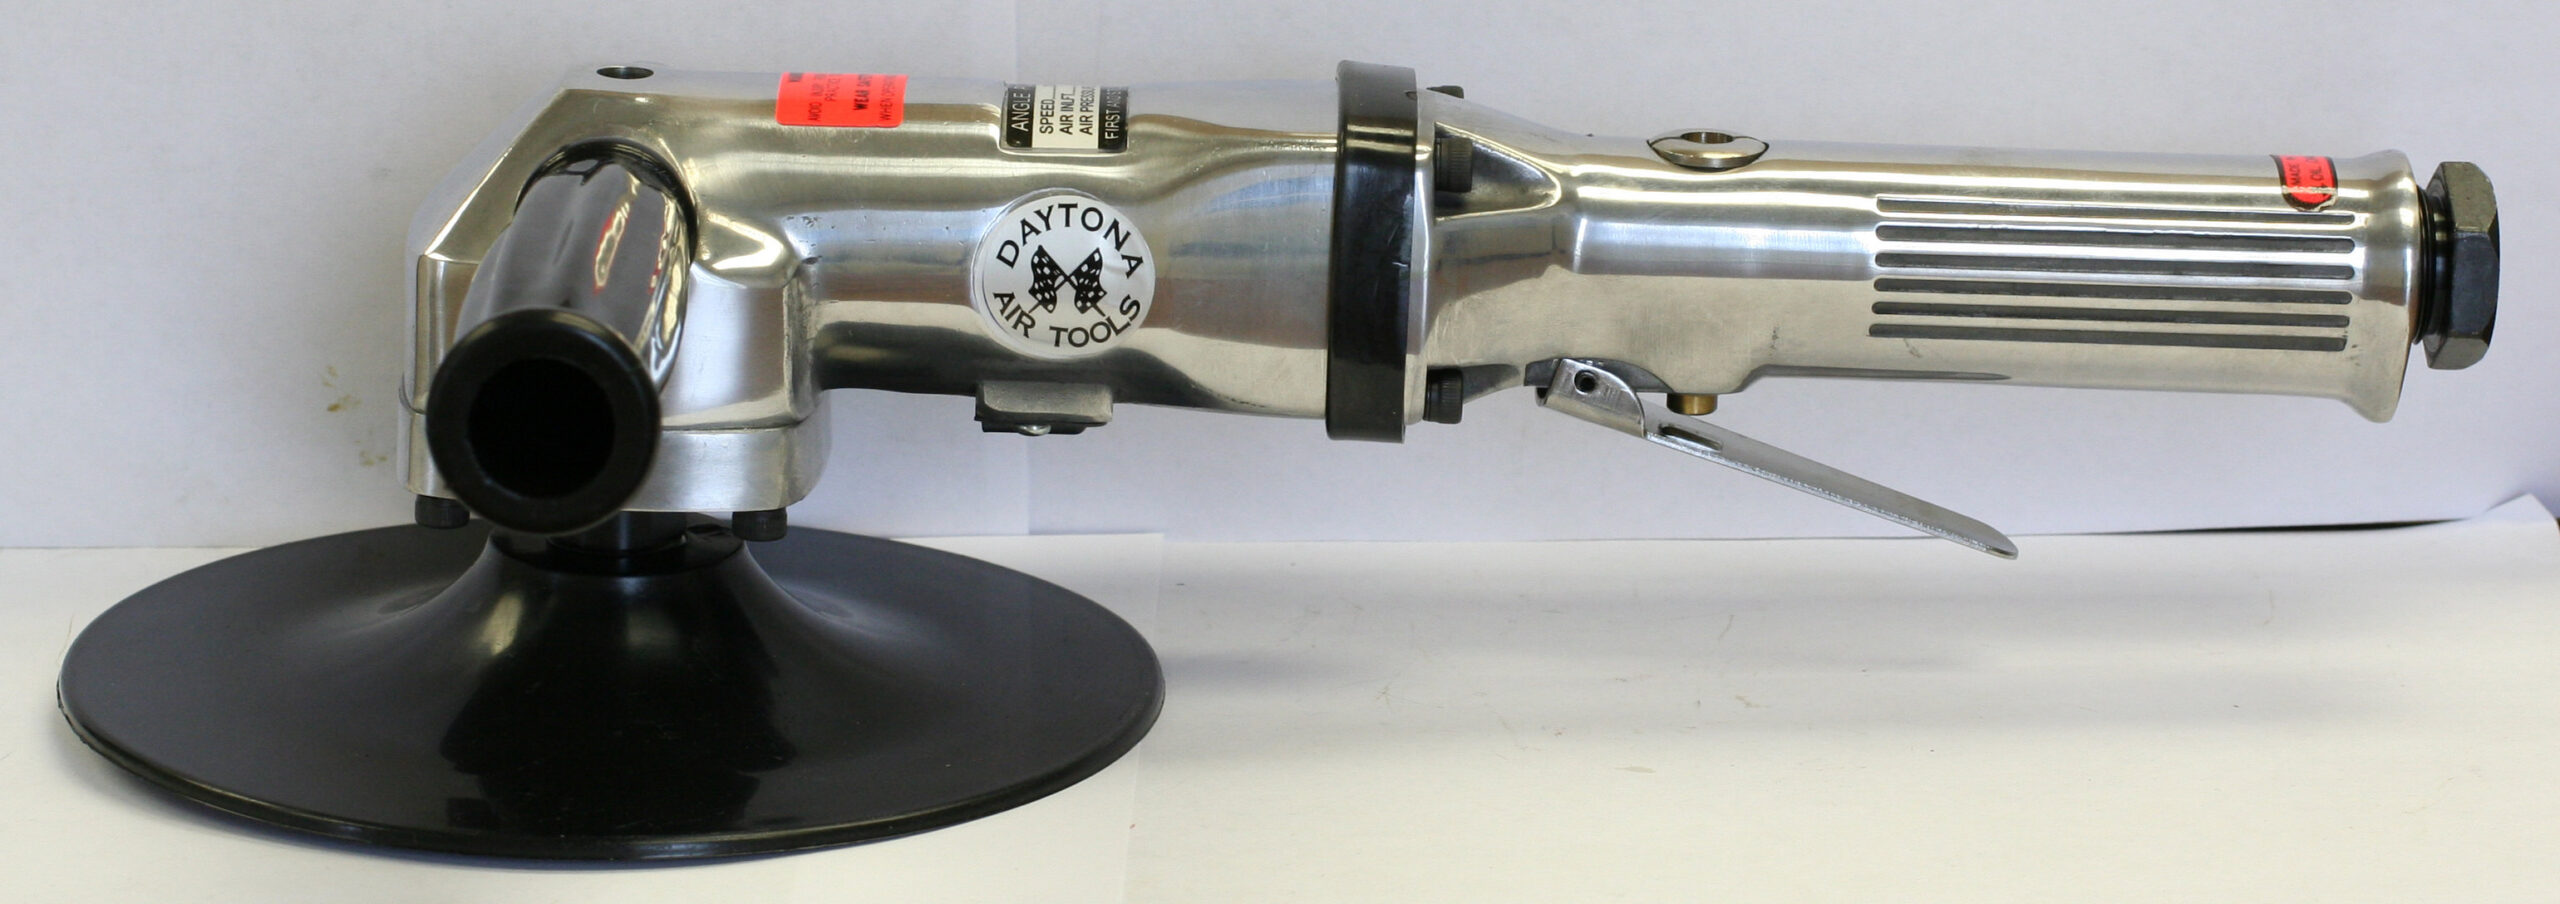 JW929-7 inch angle grinder-sander 4500rpm